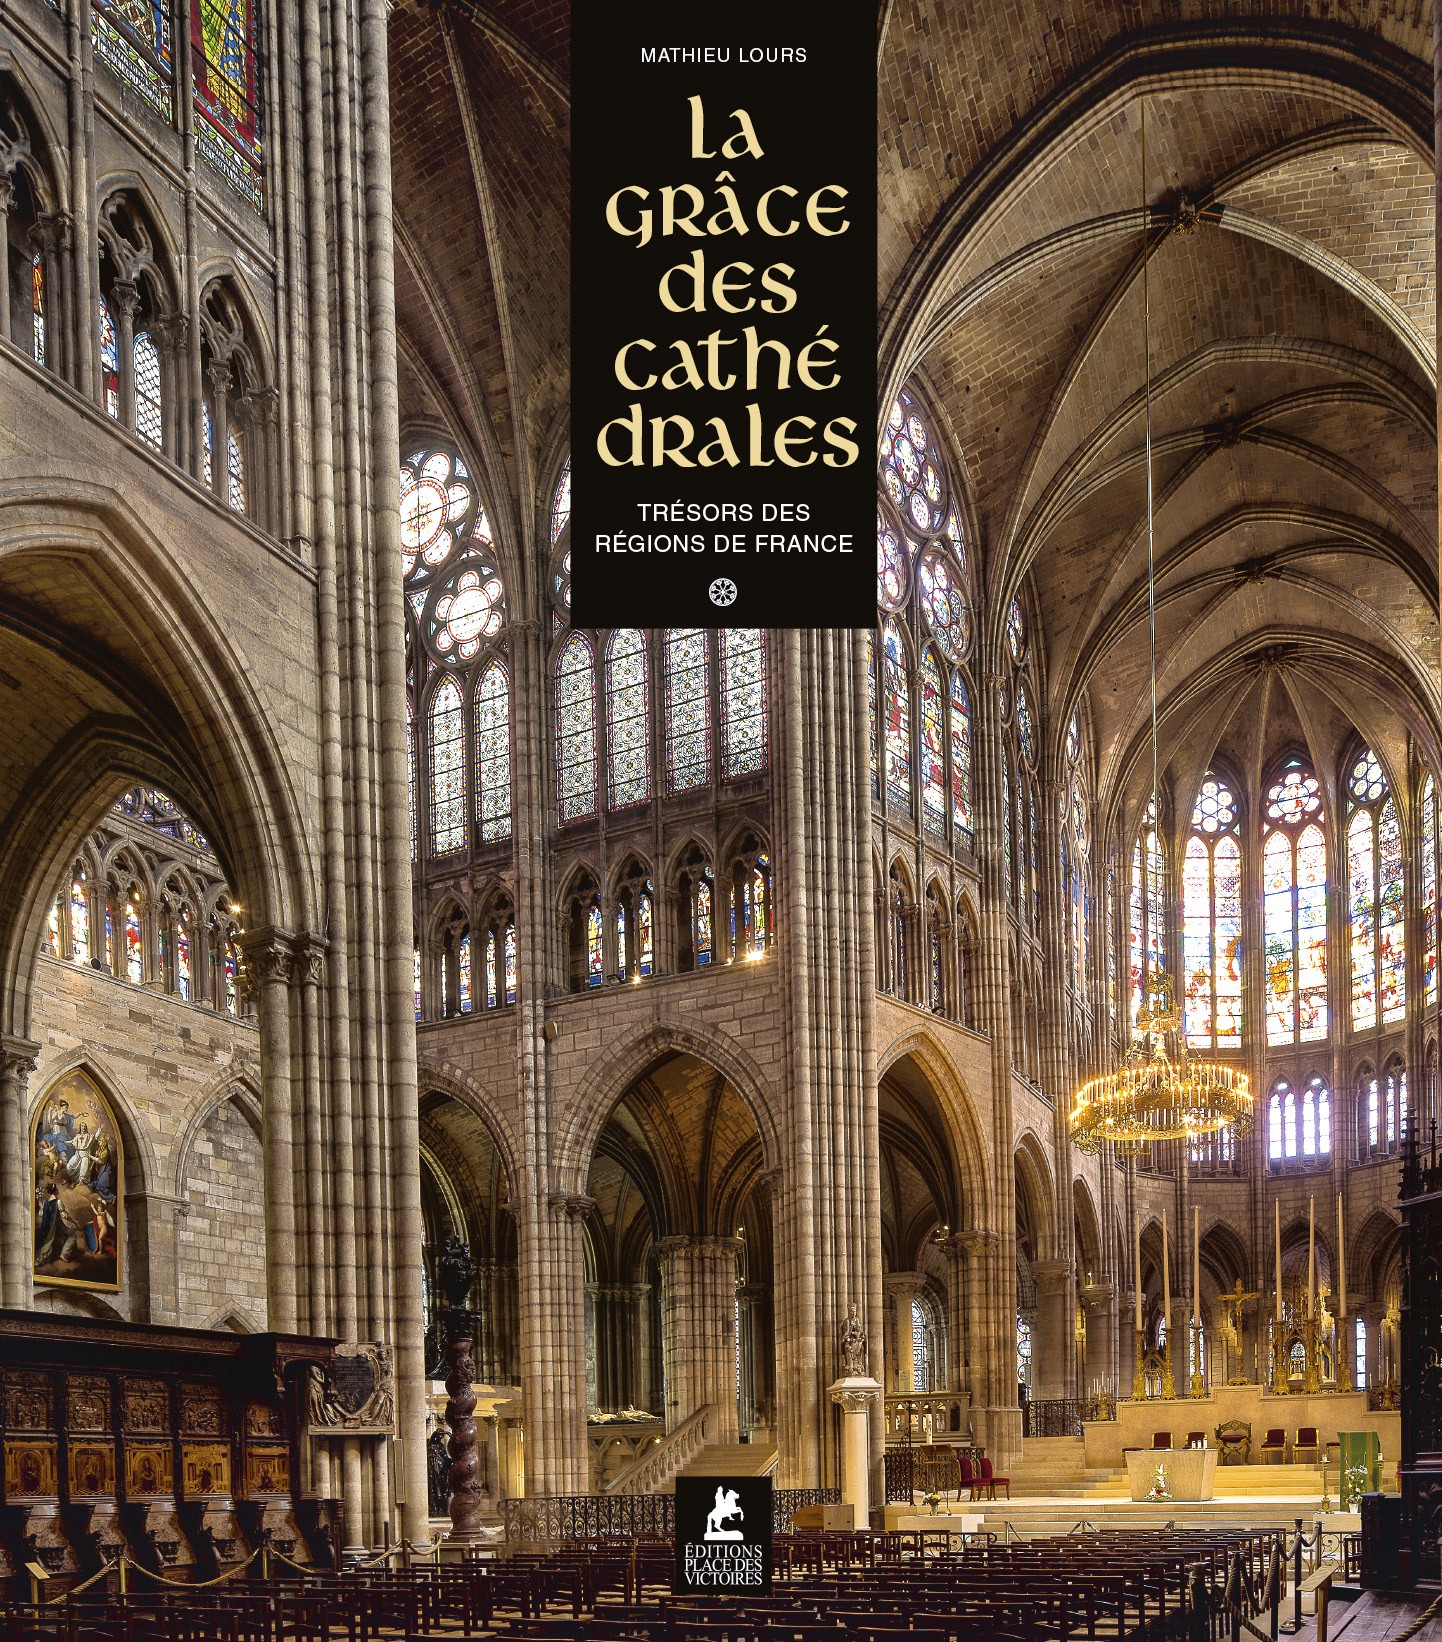 La grâce des cathédrales, trésors des régions de France